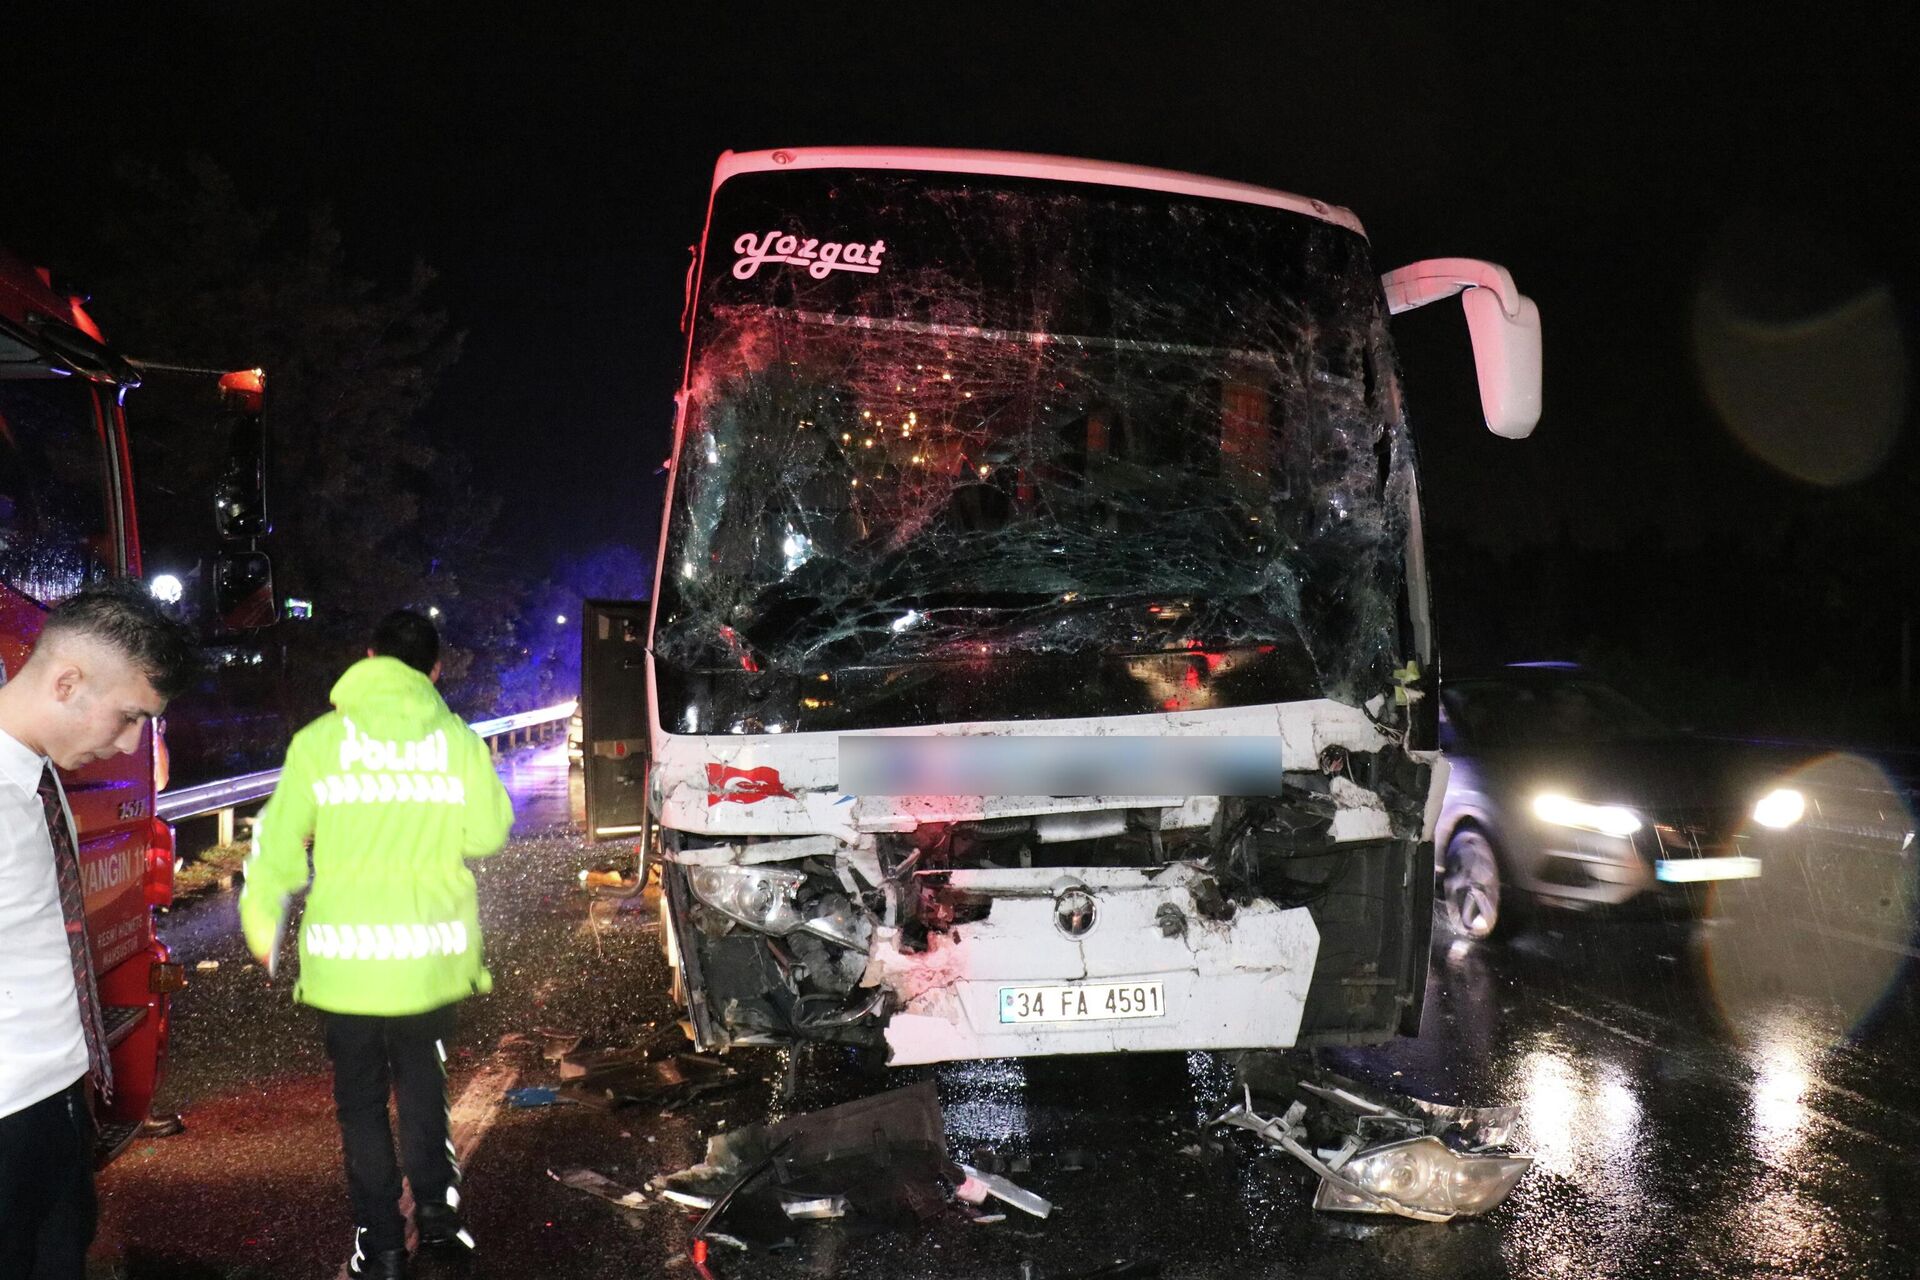 Sakarya'nın Arifiye ilçesi D-650 Karayolu'nda şehirler arası yolcu otobüsünün tıra arkadan çarptığı kazada 25 kişi yaralandı. Otobüste yolcu olarak bulunan Aşır Durgut, Taksi otobüse korna çaldı, otobüs sağa kaçınca öndeki tırda yavaş gidiyordu arkadan vurdu dedi. - Sputnik Türkiye, 1920, 24.08.2022